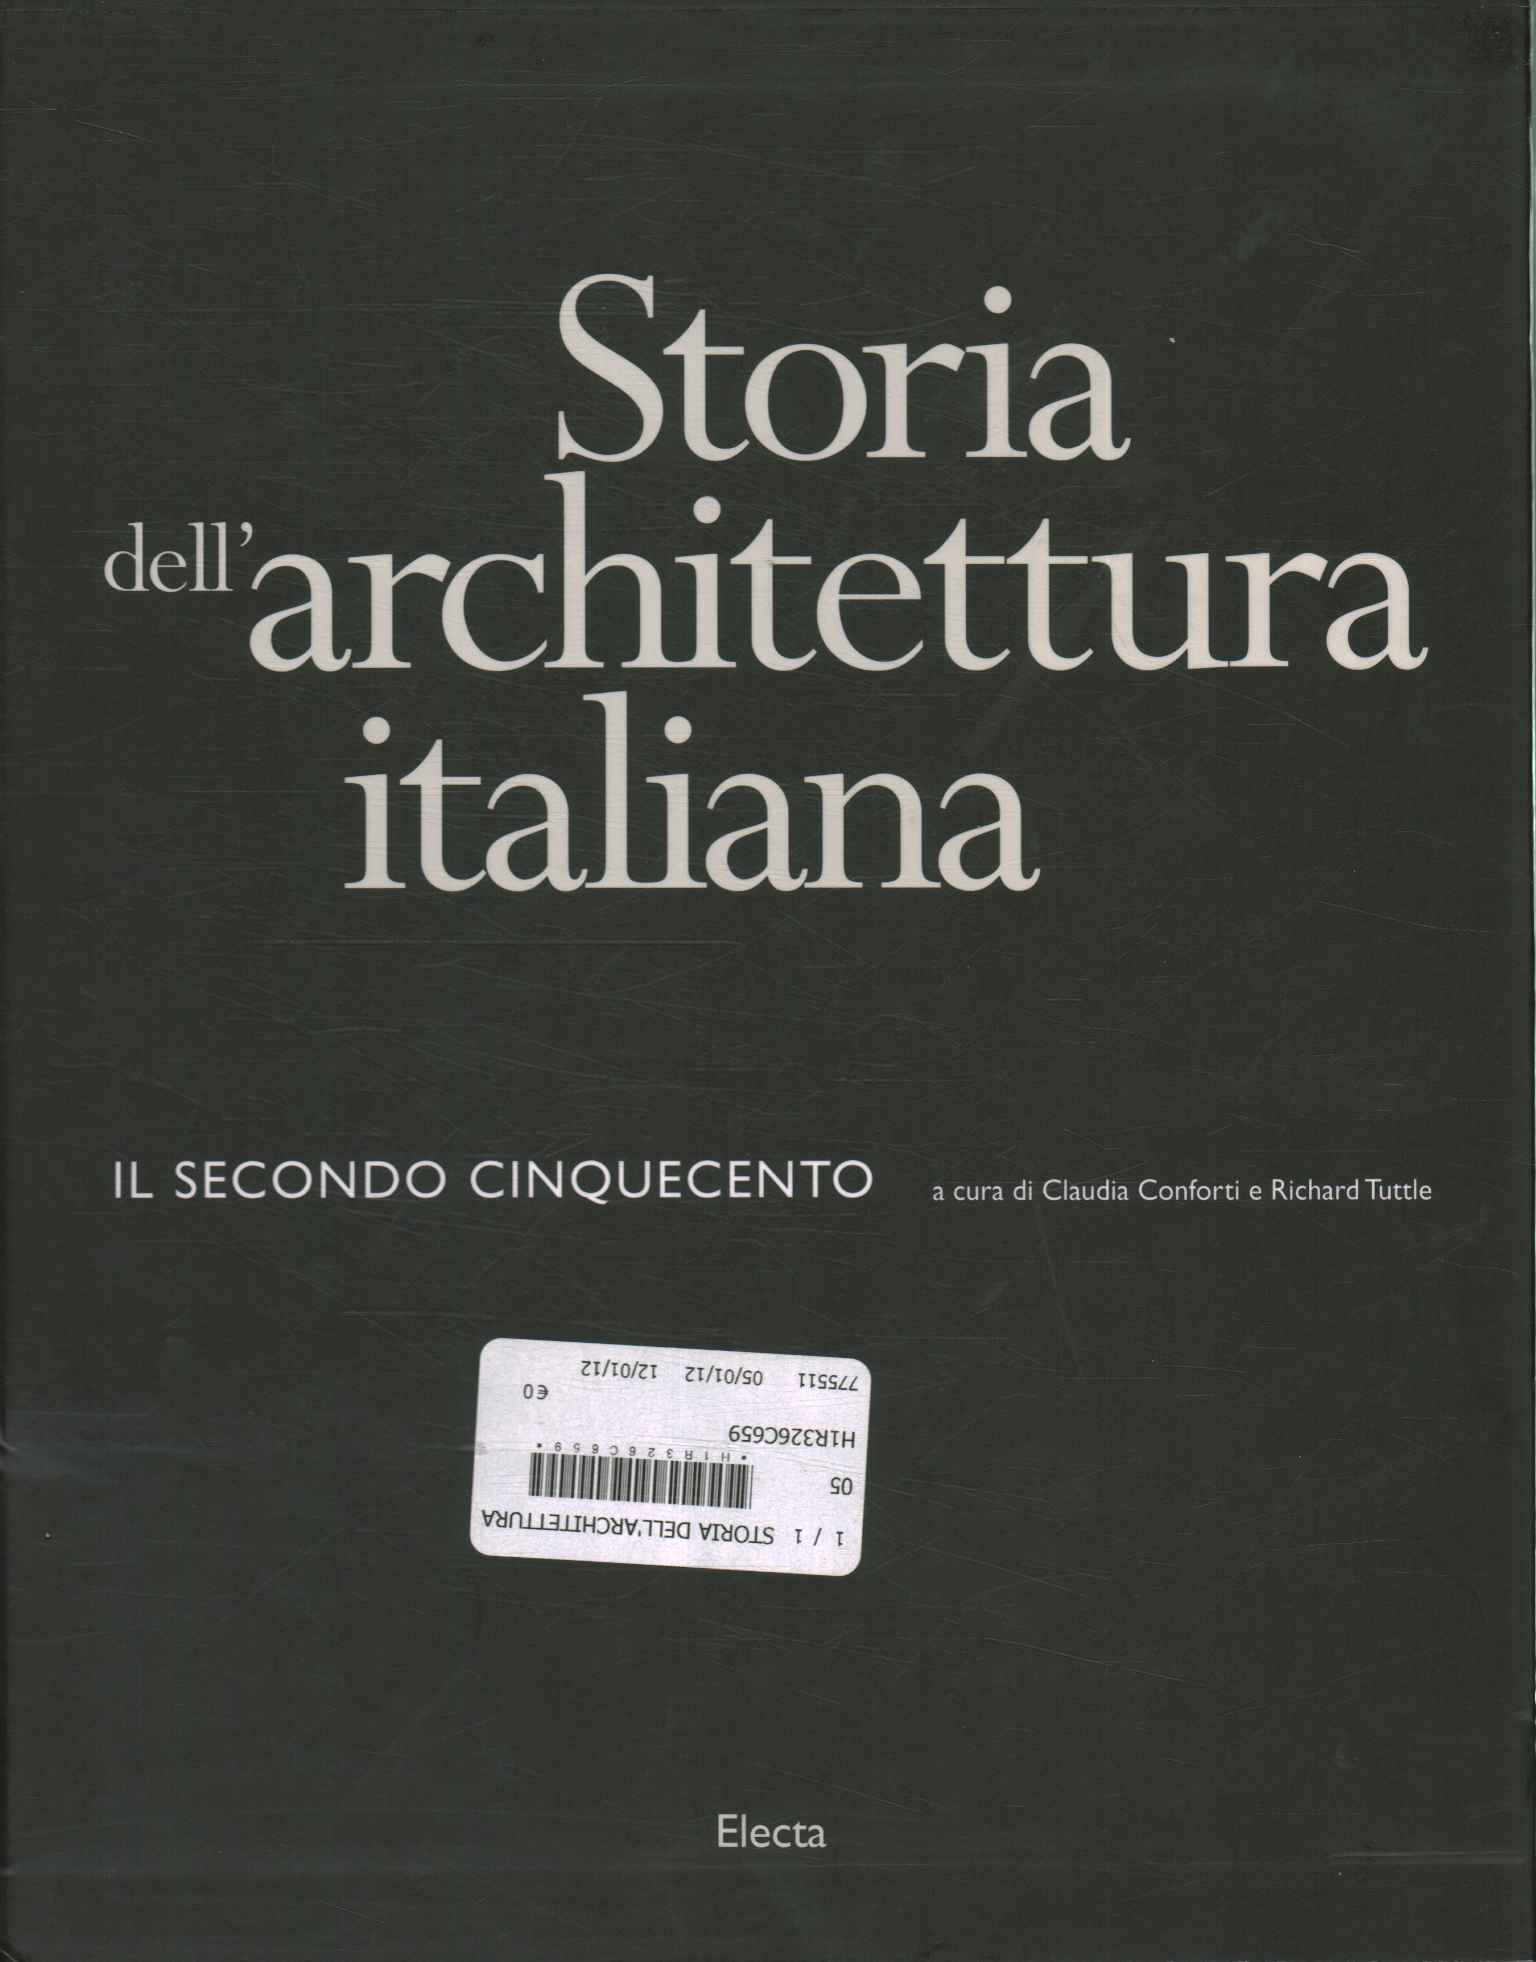 Histoire de l'architecture italienne.%,Histoire de l'architecture italienne.%,Histoire de l'architecture italienne.%,Histoire de l'architecture italienne.%